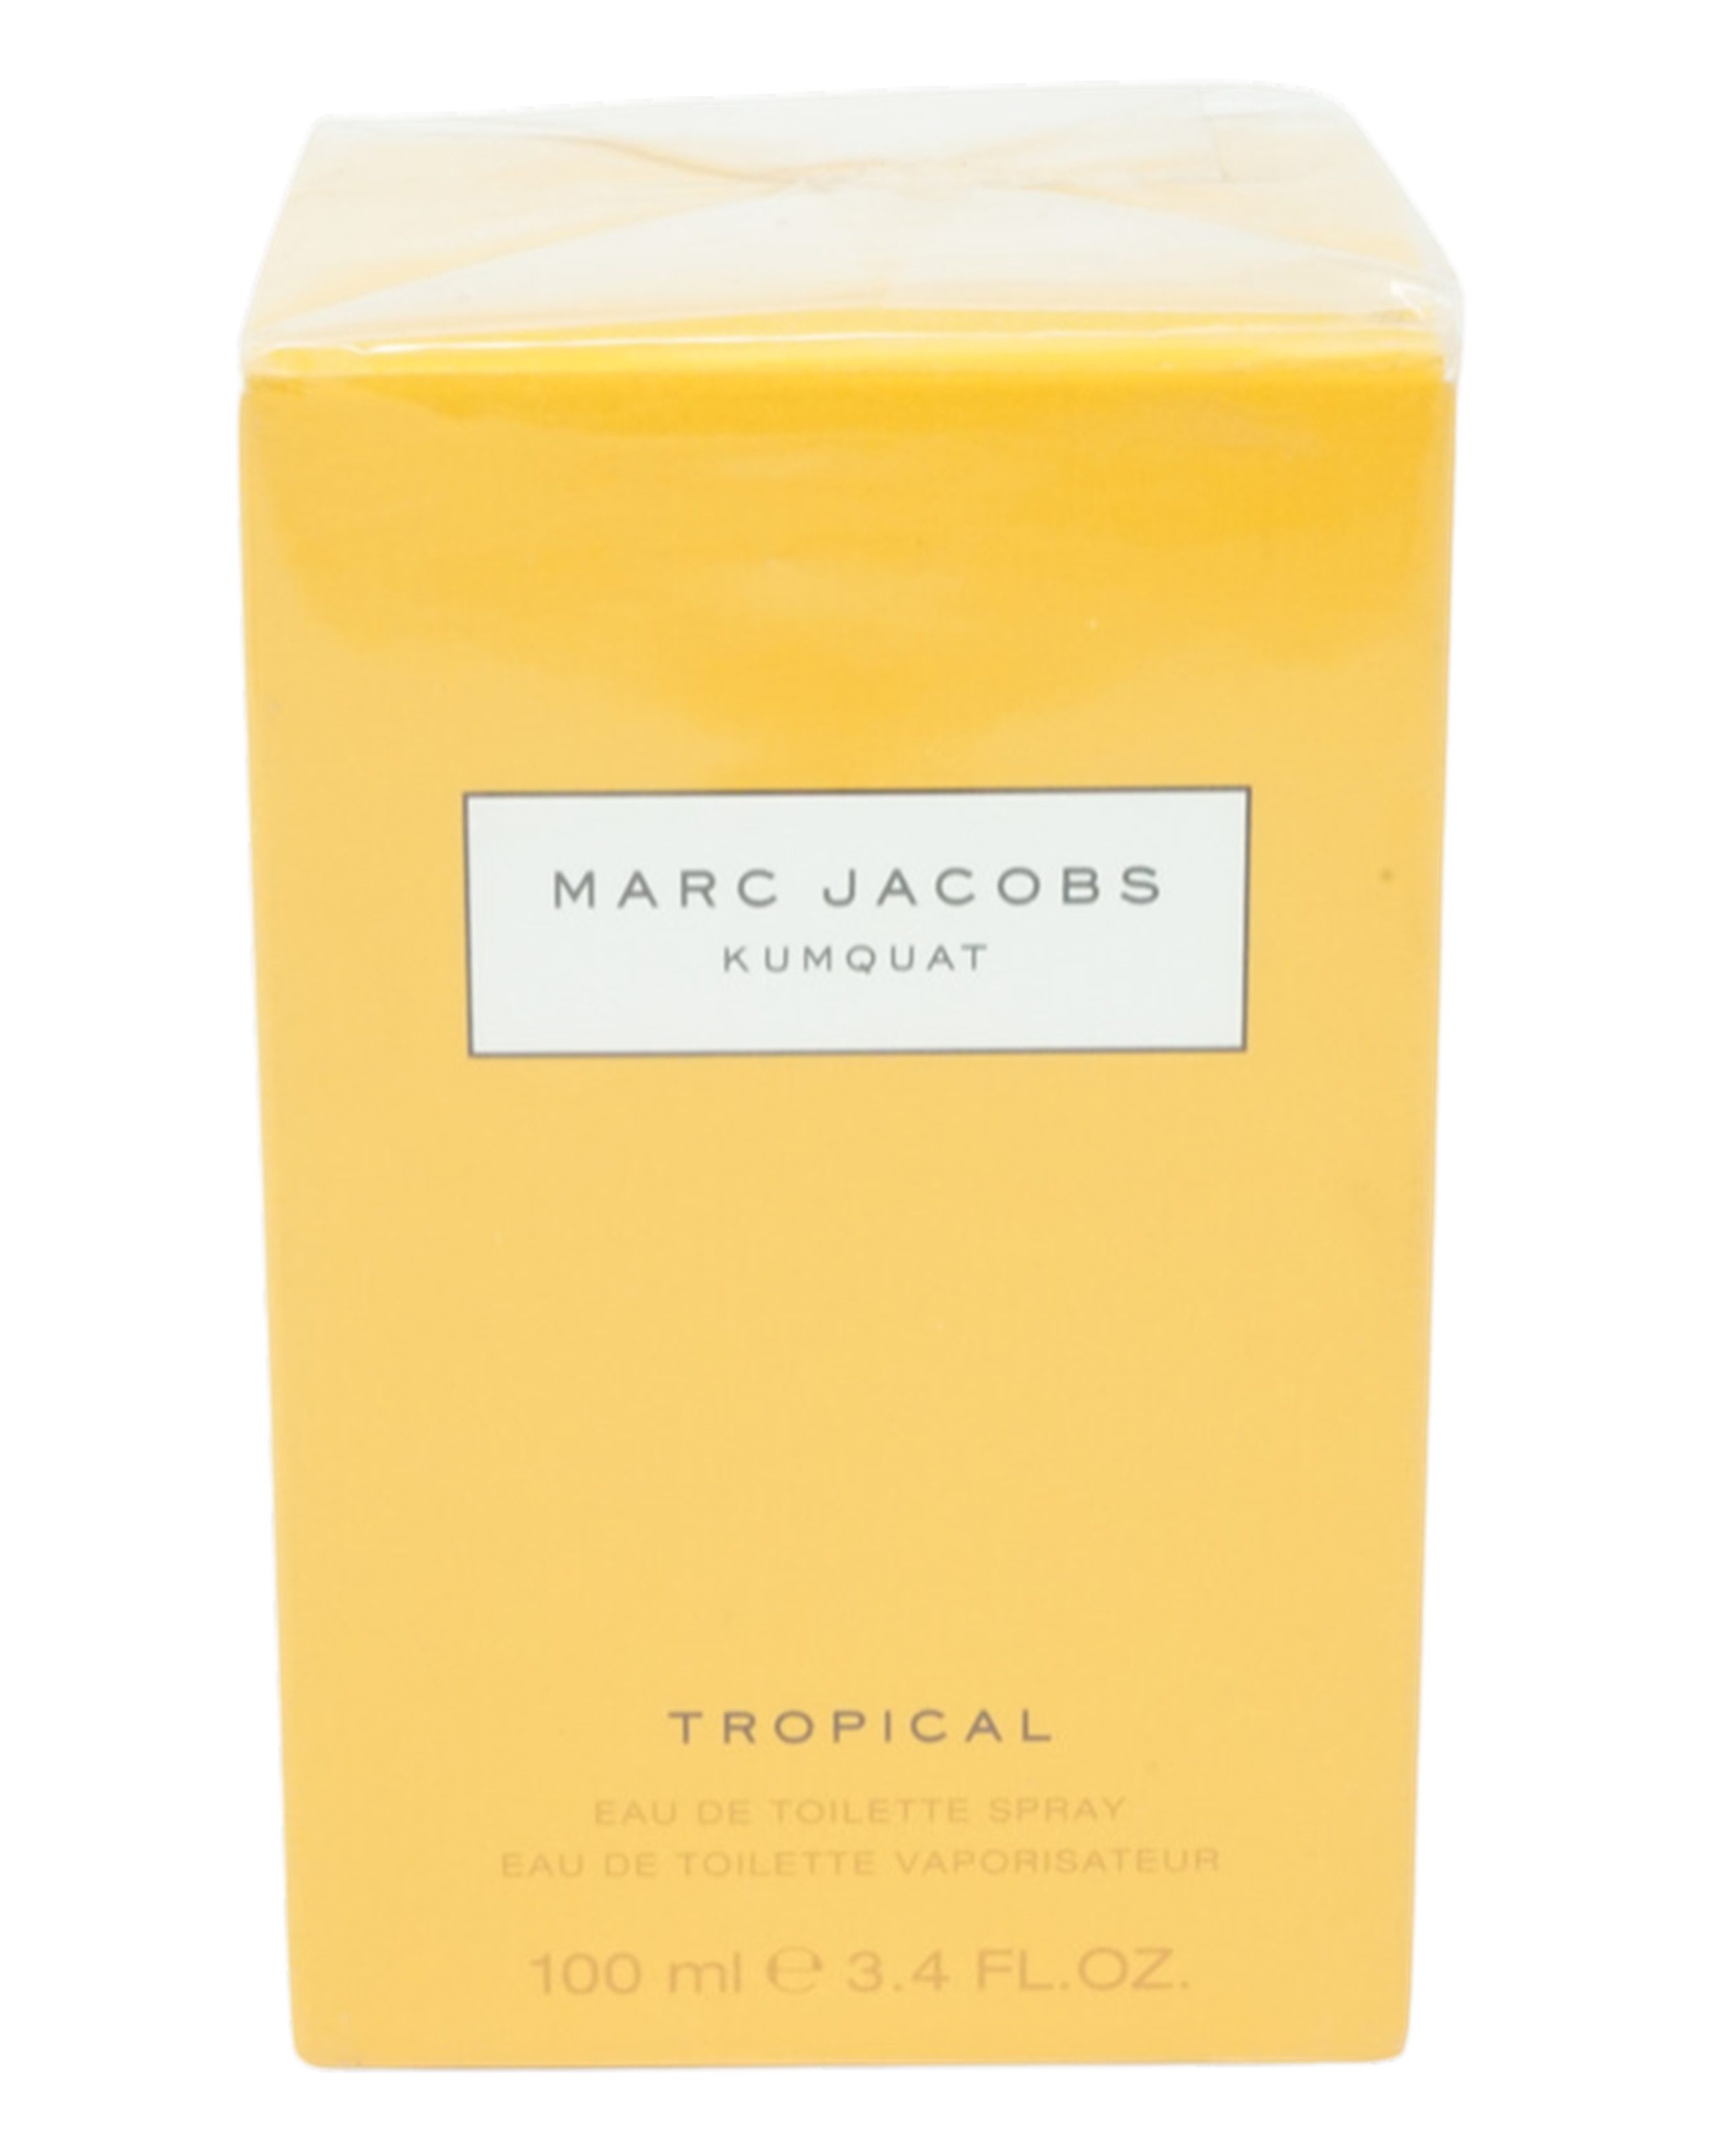 MARC JACOBS Eau de Toilette Marc Jacobs Kumquat Tropical Eau de Toilette Spray 100ml